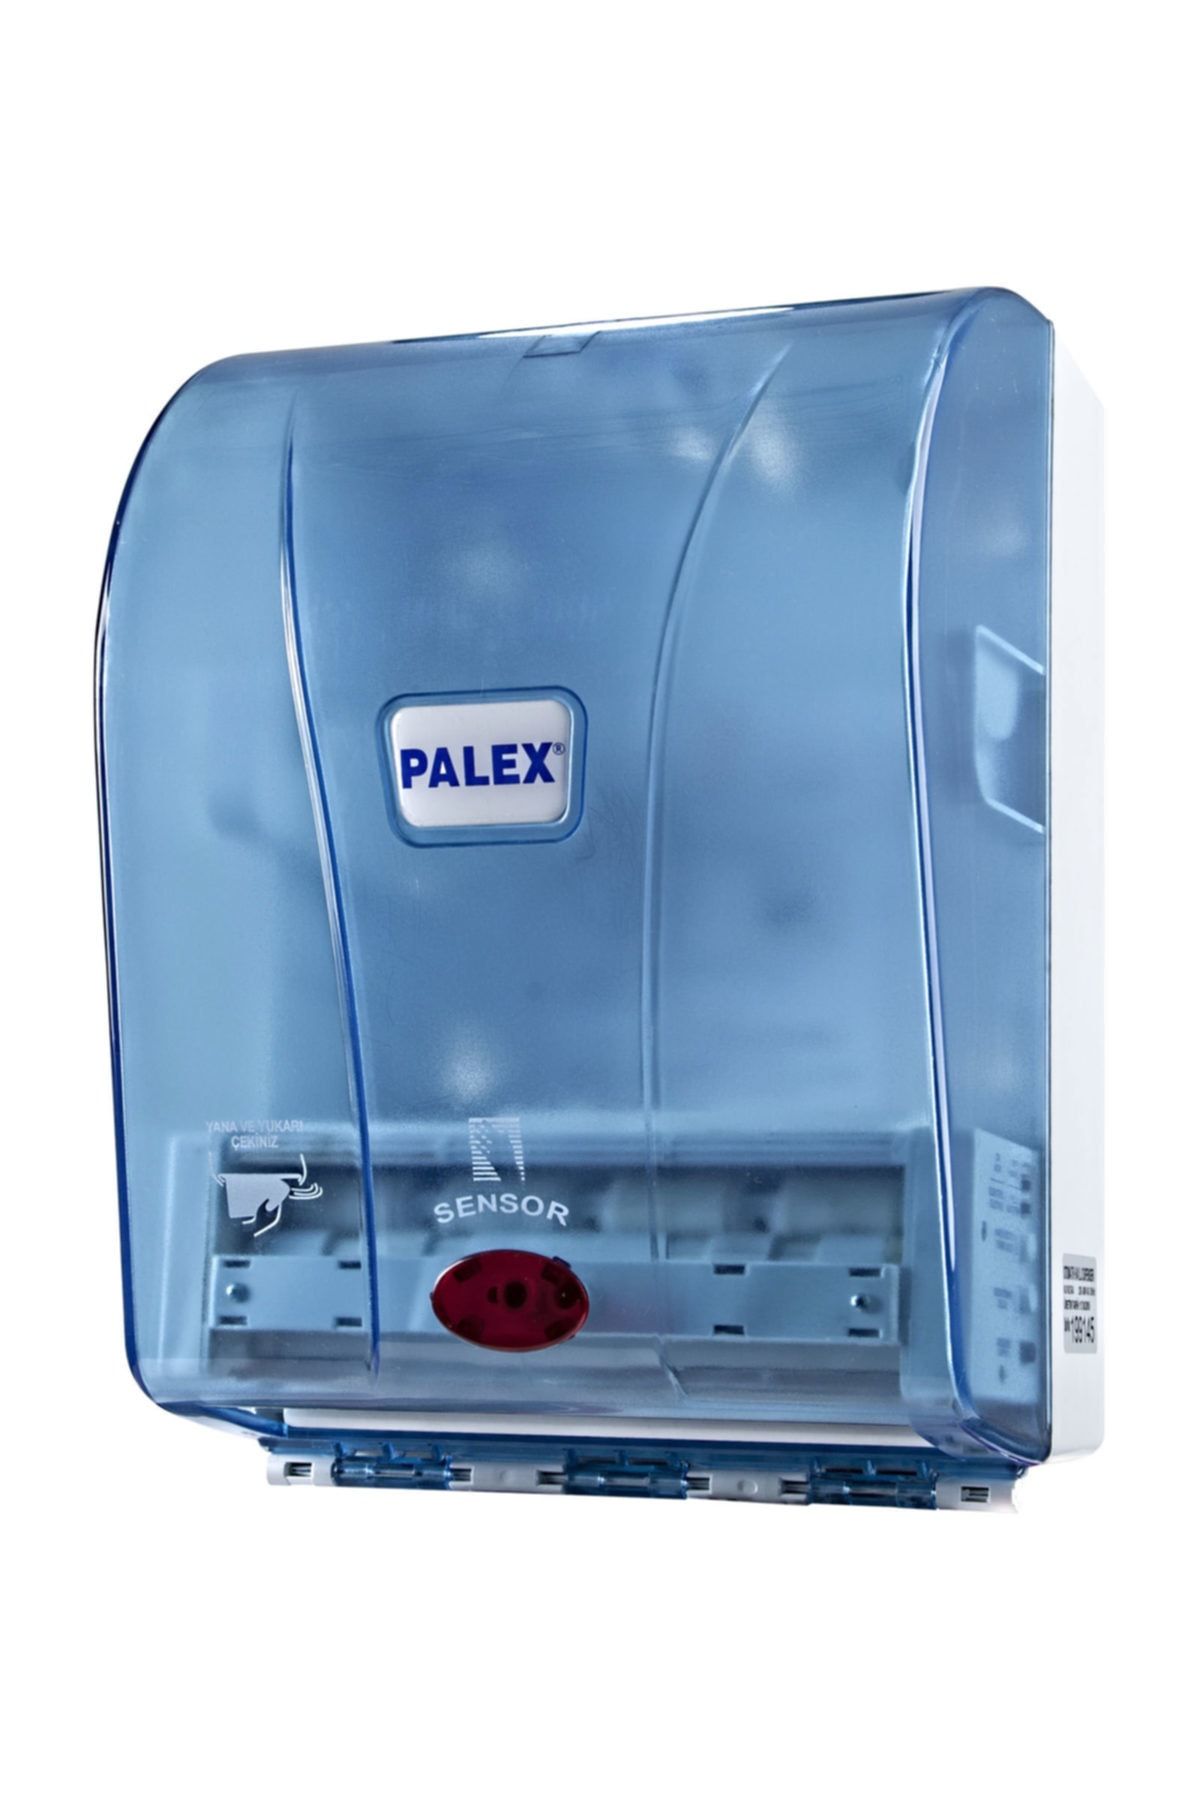 Palex (ün-ev) Sensörlü Otomatik Kağıt Havluluk ( Kağıt Havlu Dispenseri)21 Cm Şeffaf Mavi 3490-1